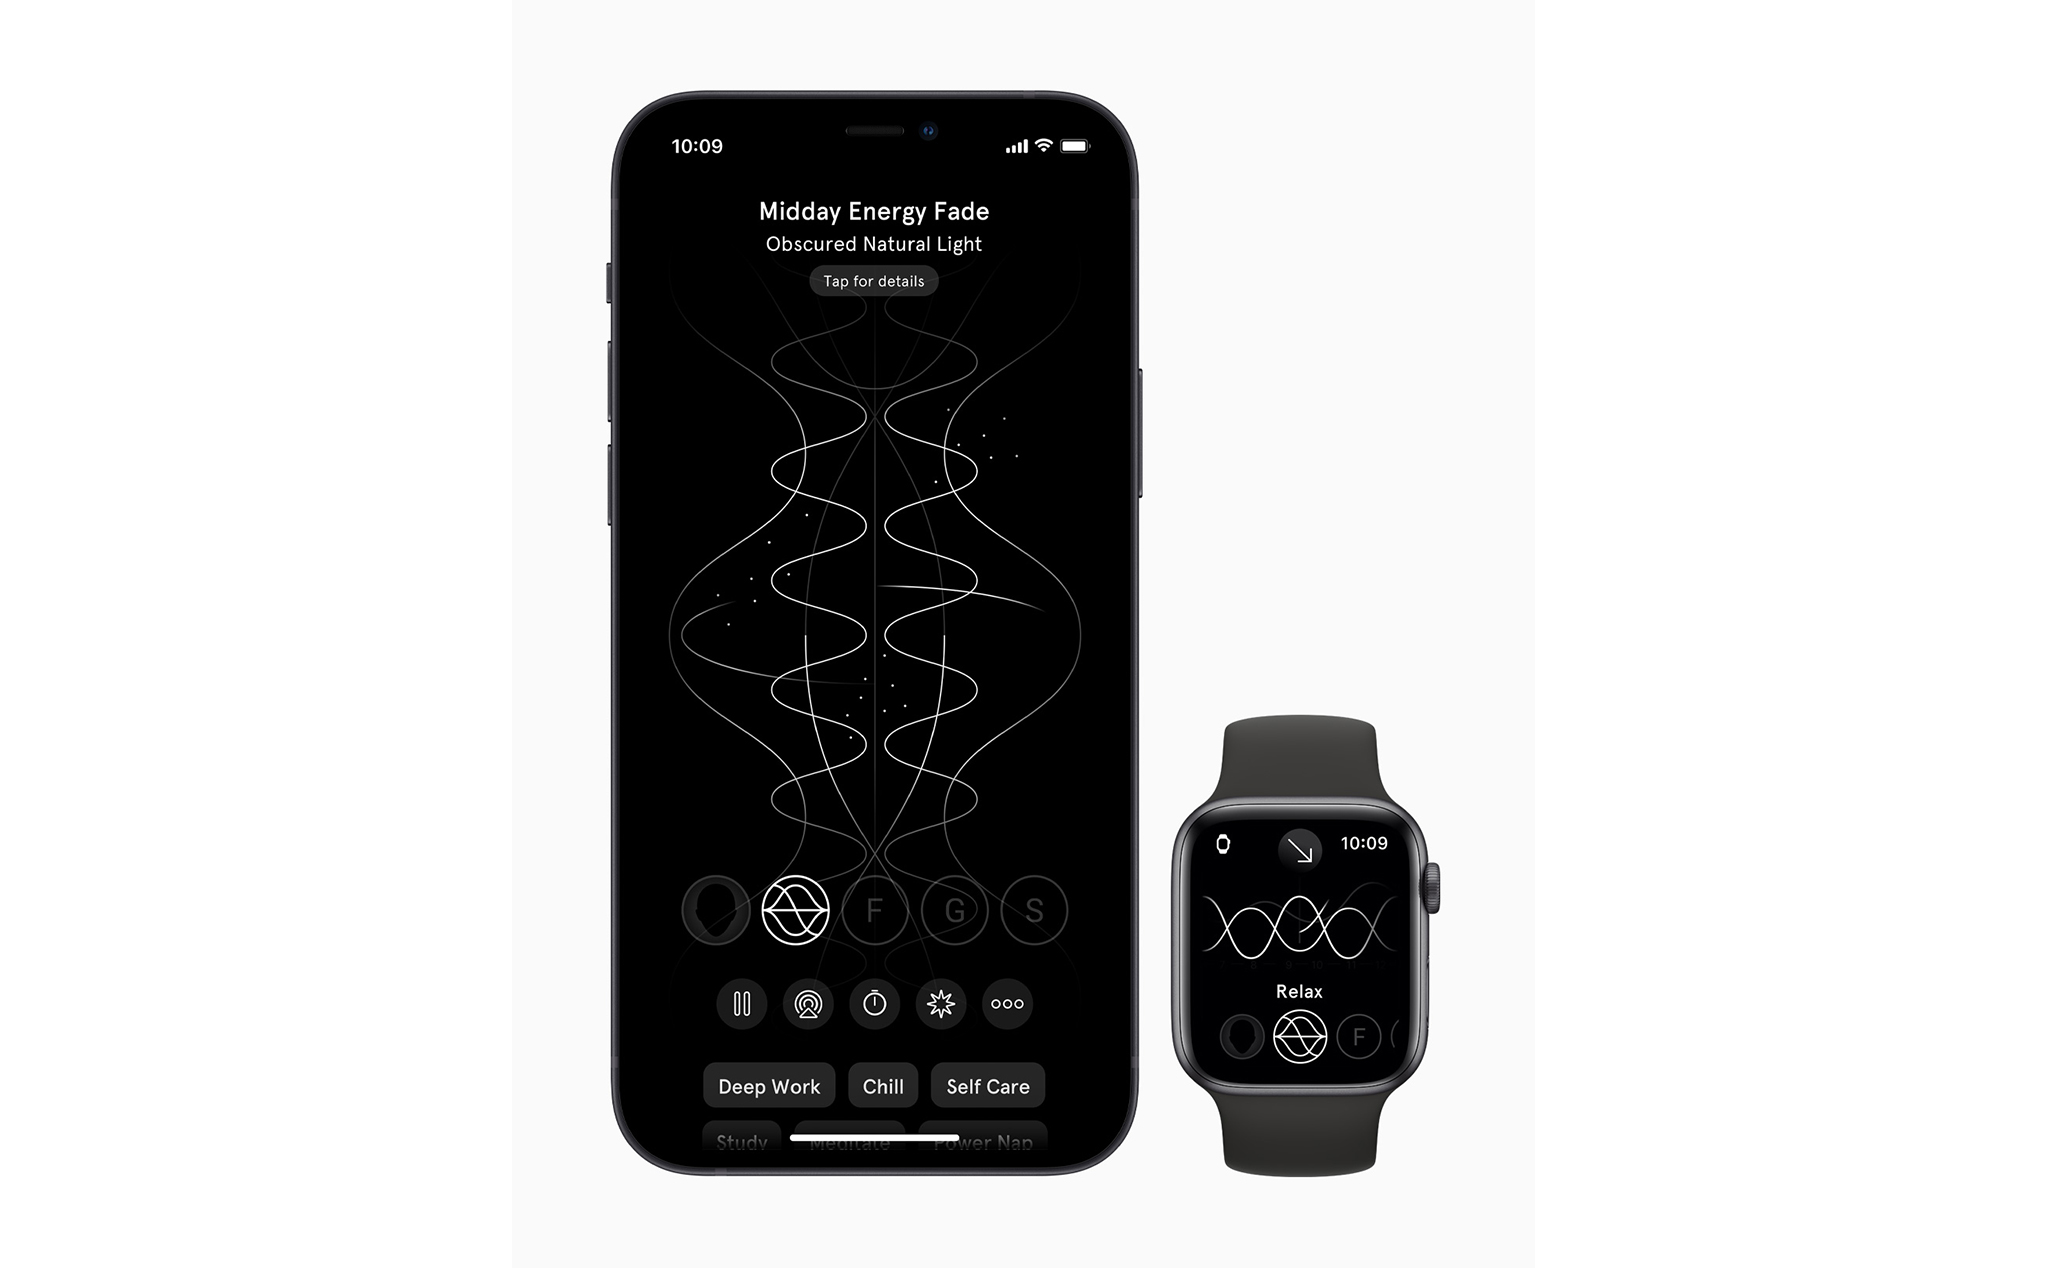 Best-of-2020-iphone12-applewatch-endel.jpg